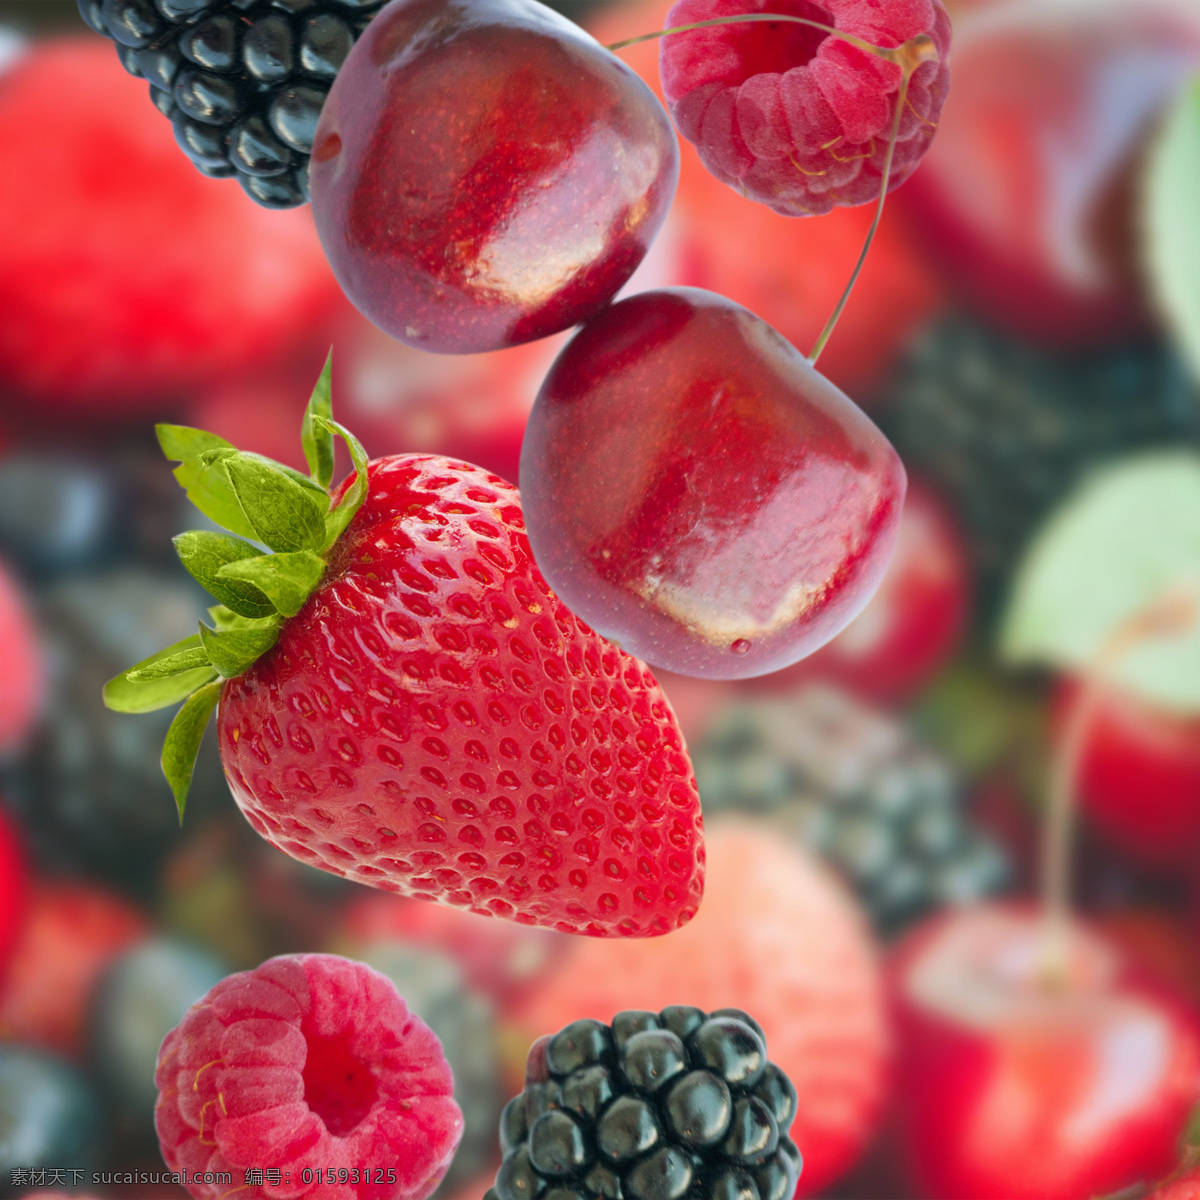 新鲜 水果 新鲜的水果 树莓 覆盆子 车厘子 草莓 水果图片 餐饮美食